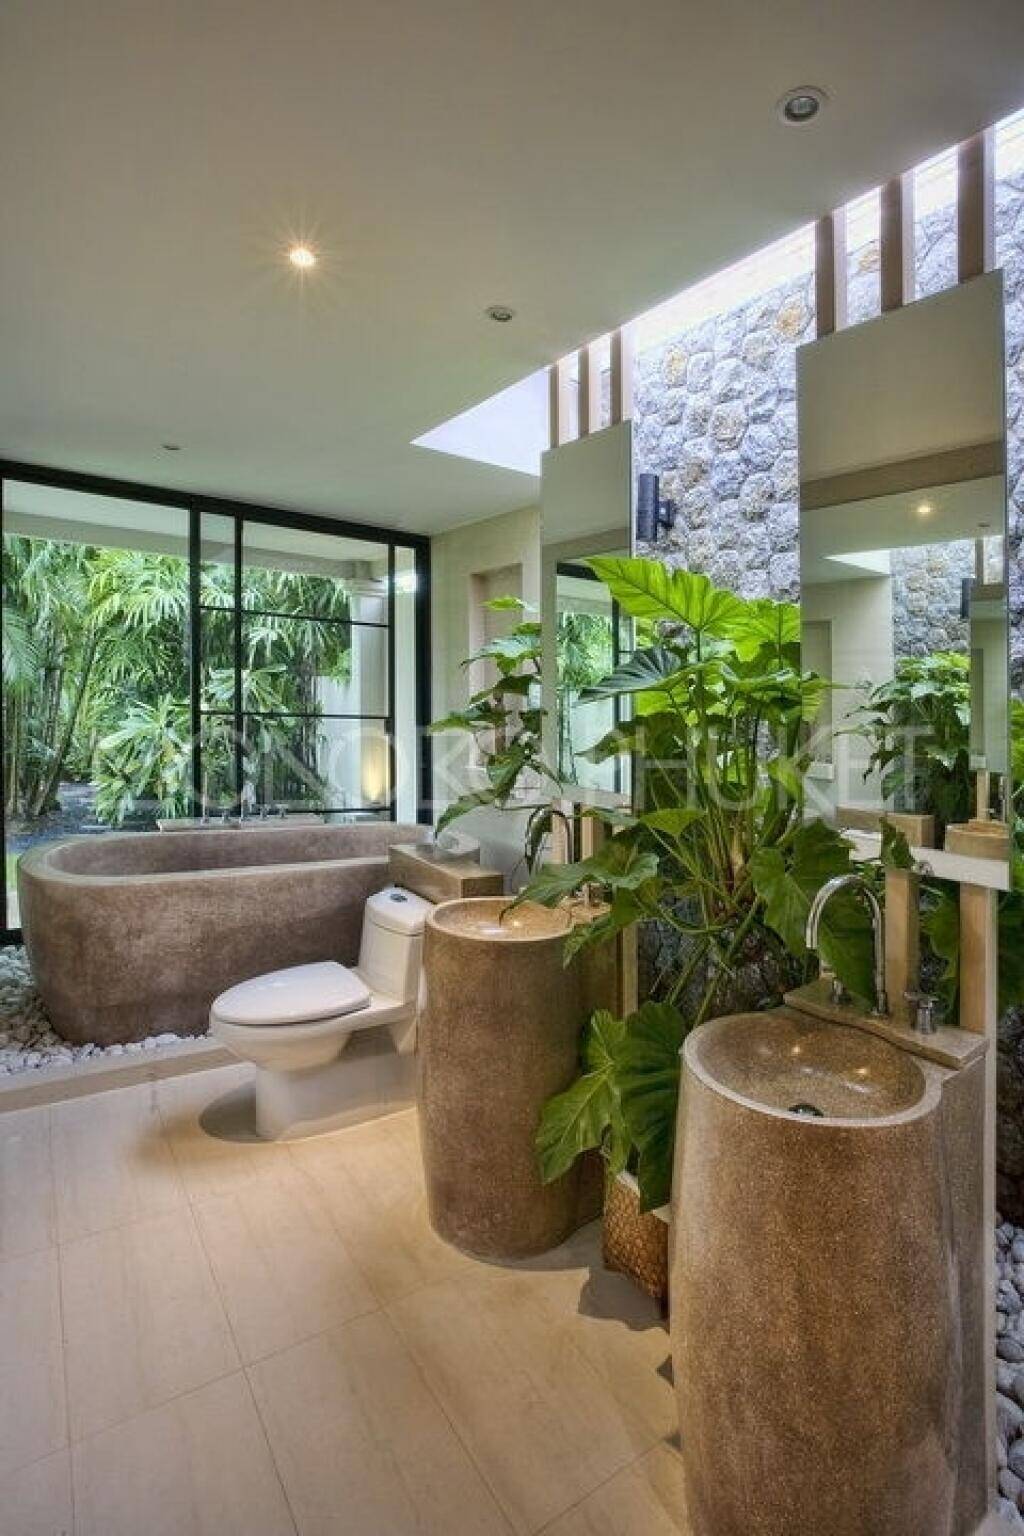 Gợi ý thiết kế nhà tắm tại nhà hệt như resort chuẩn 5 sao, xanh mát cùng không gian mở sáng thoáng